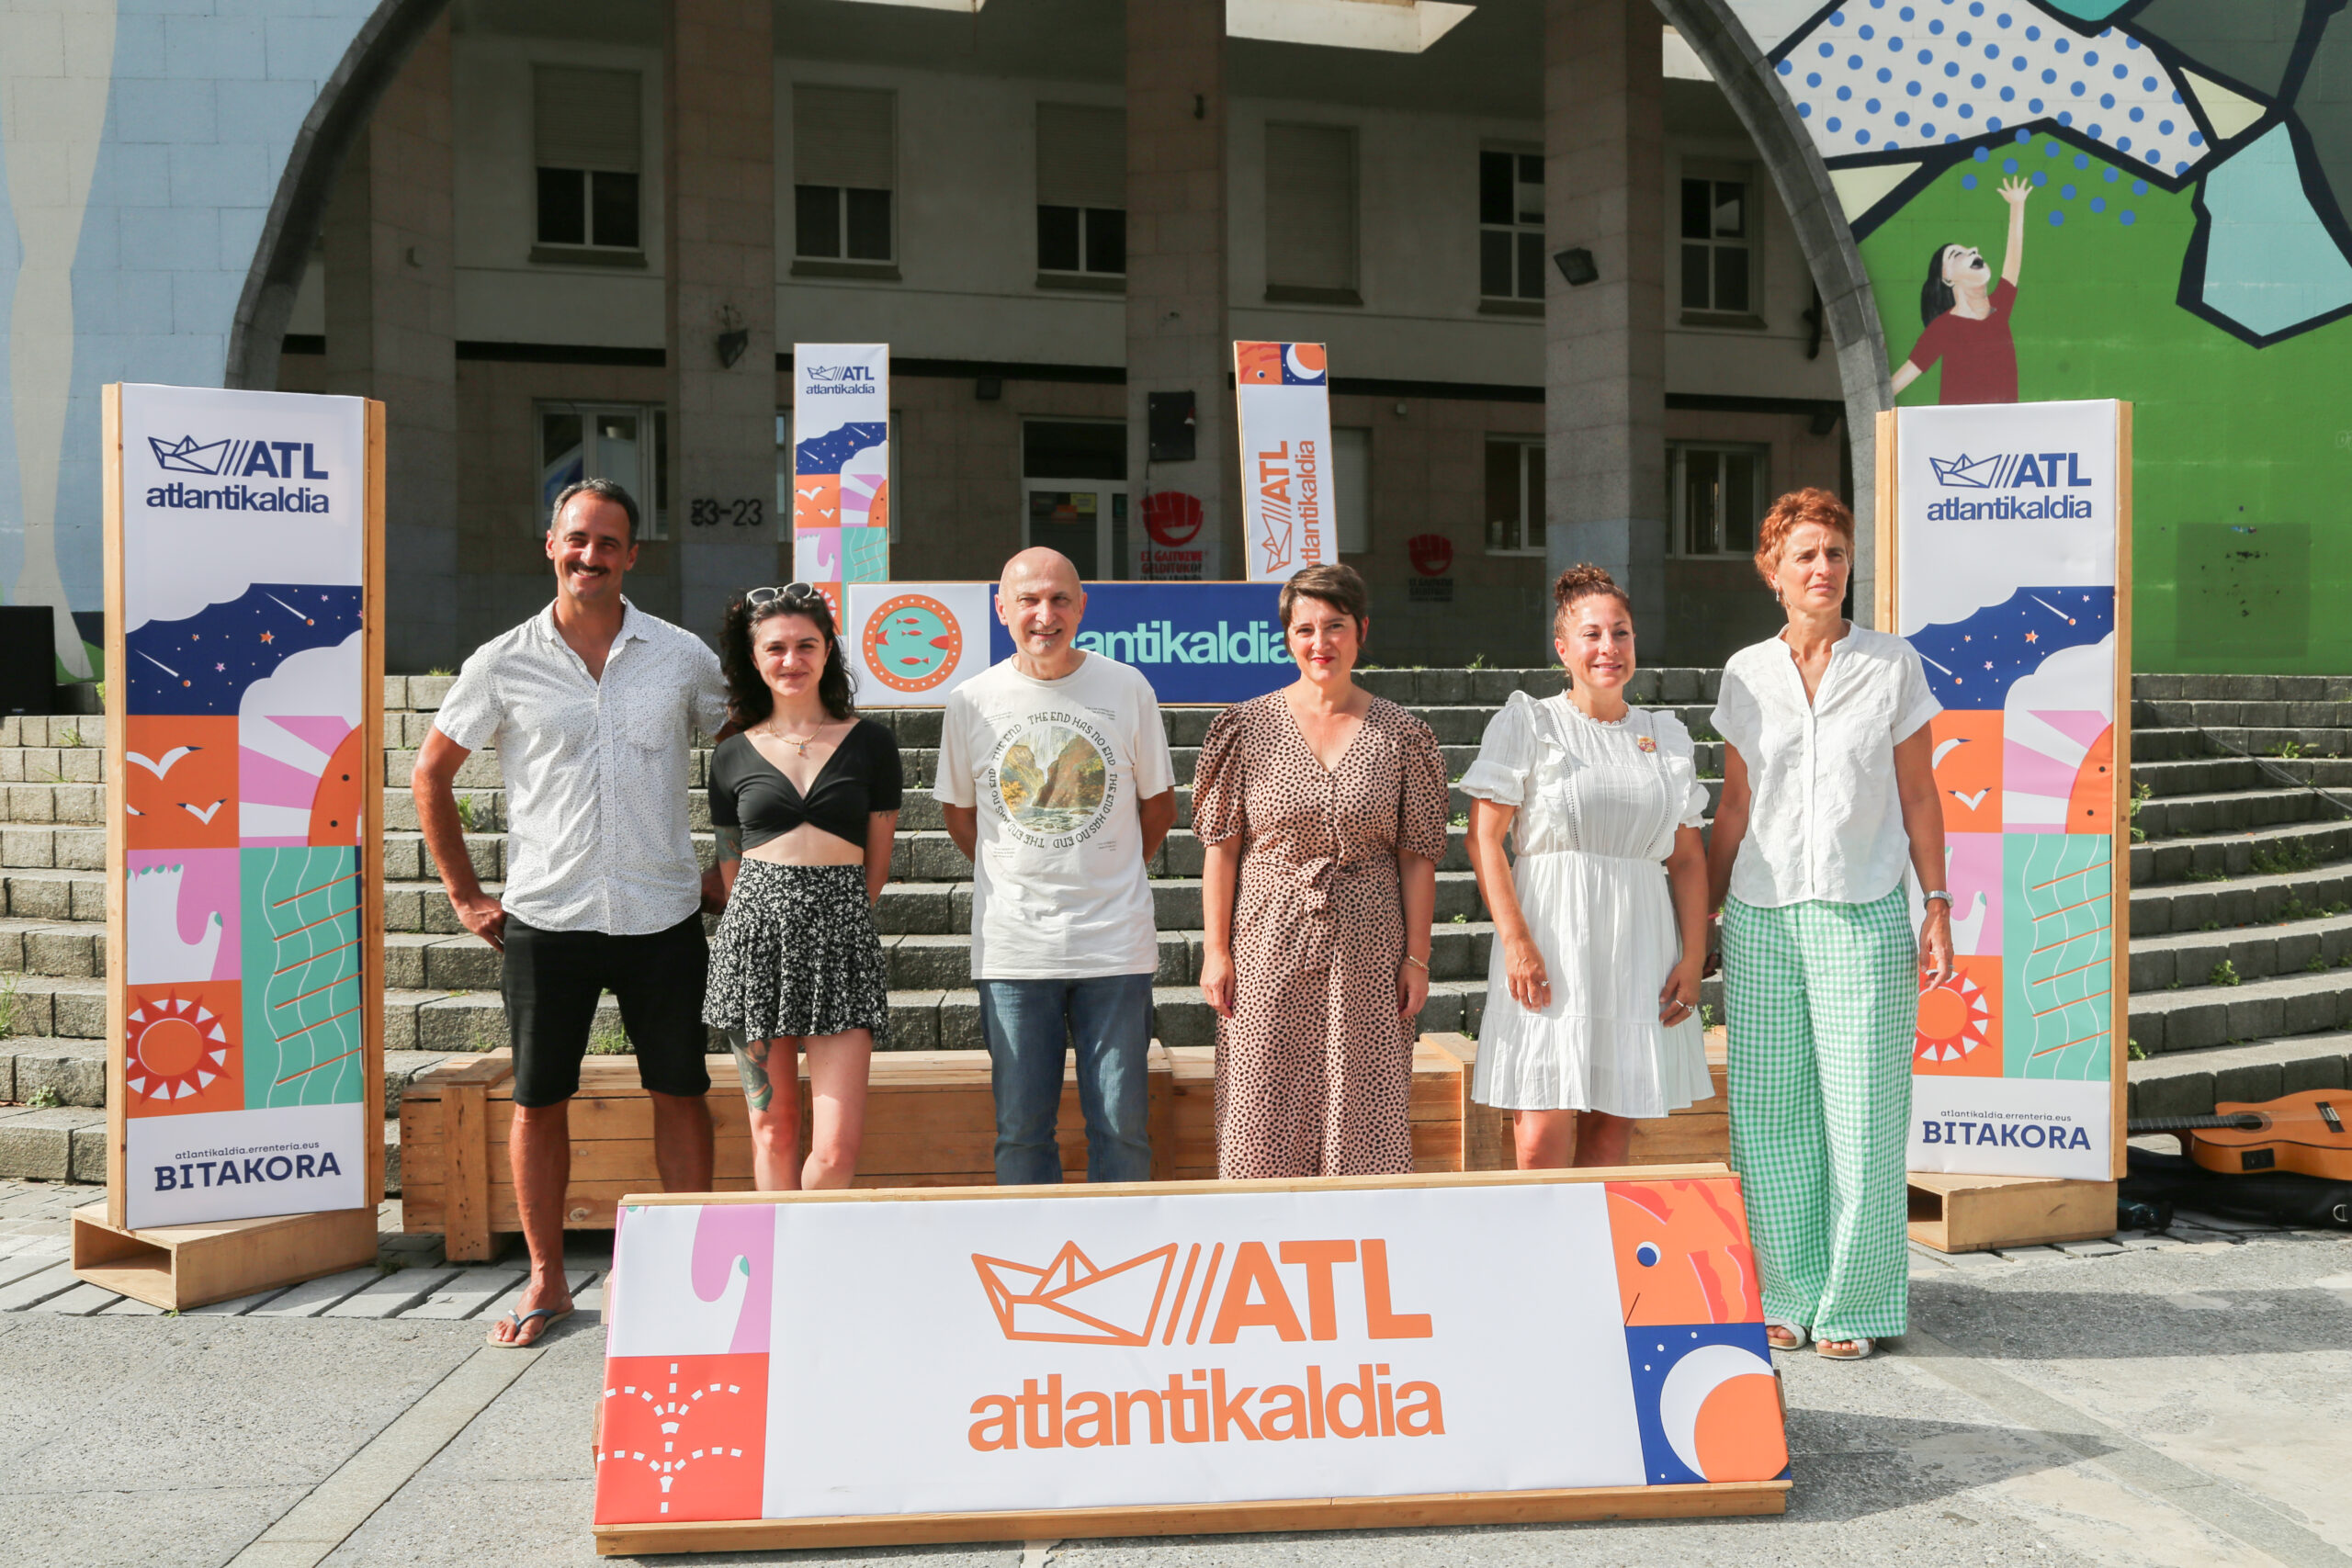 Atlantikaldia ofrecerá 59 actividades y actuaciones diferentes en su décima edición, del  14 al 17 de septiembre